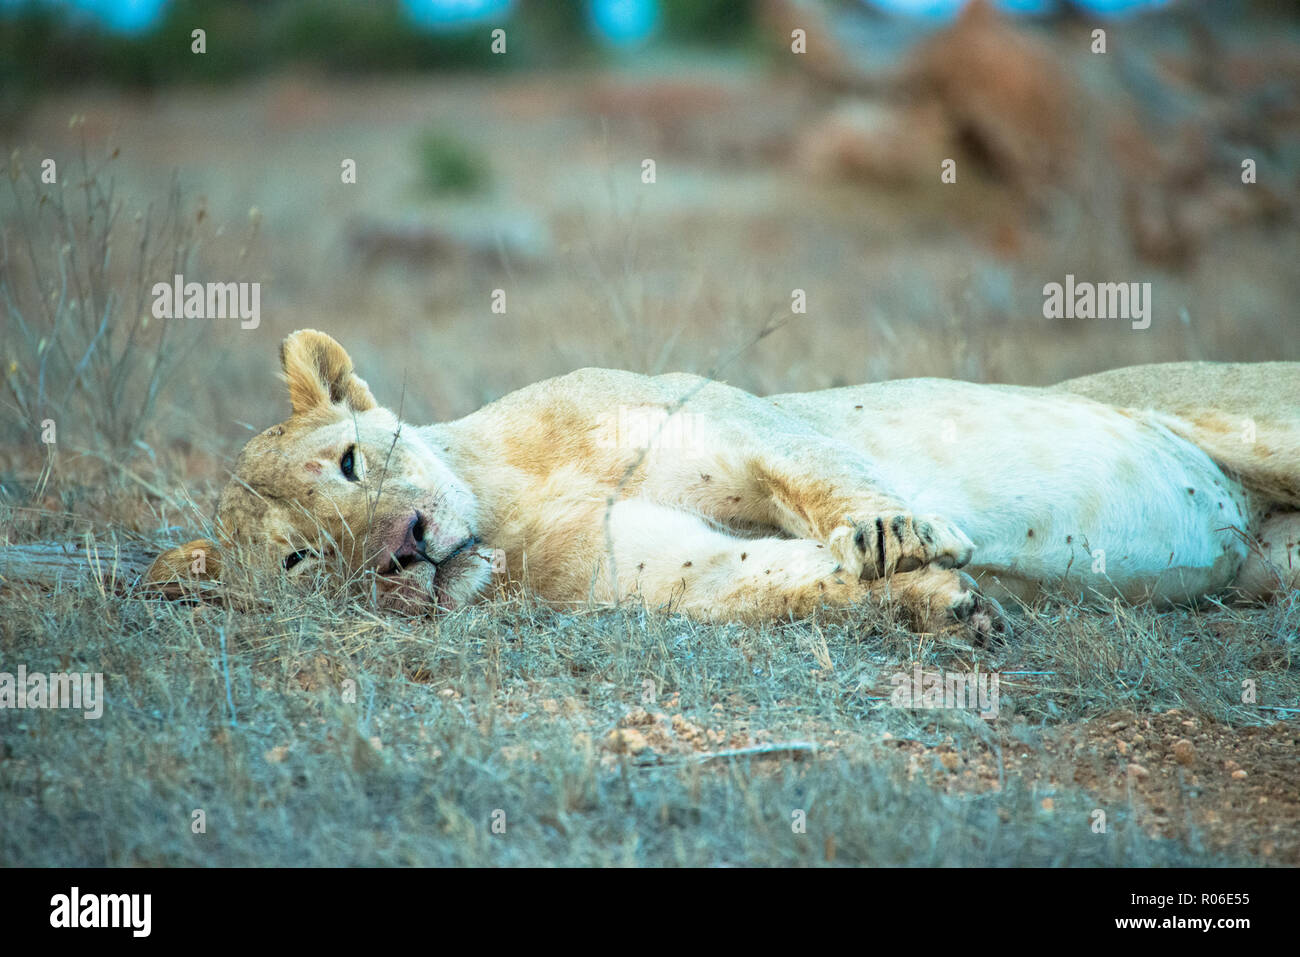 lion in Tsavo east National park, Kenya Stock Photo